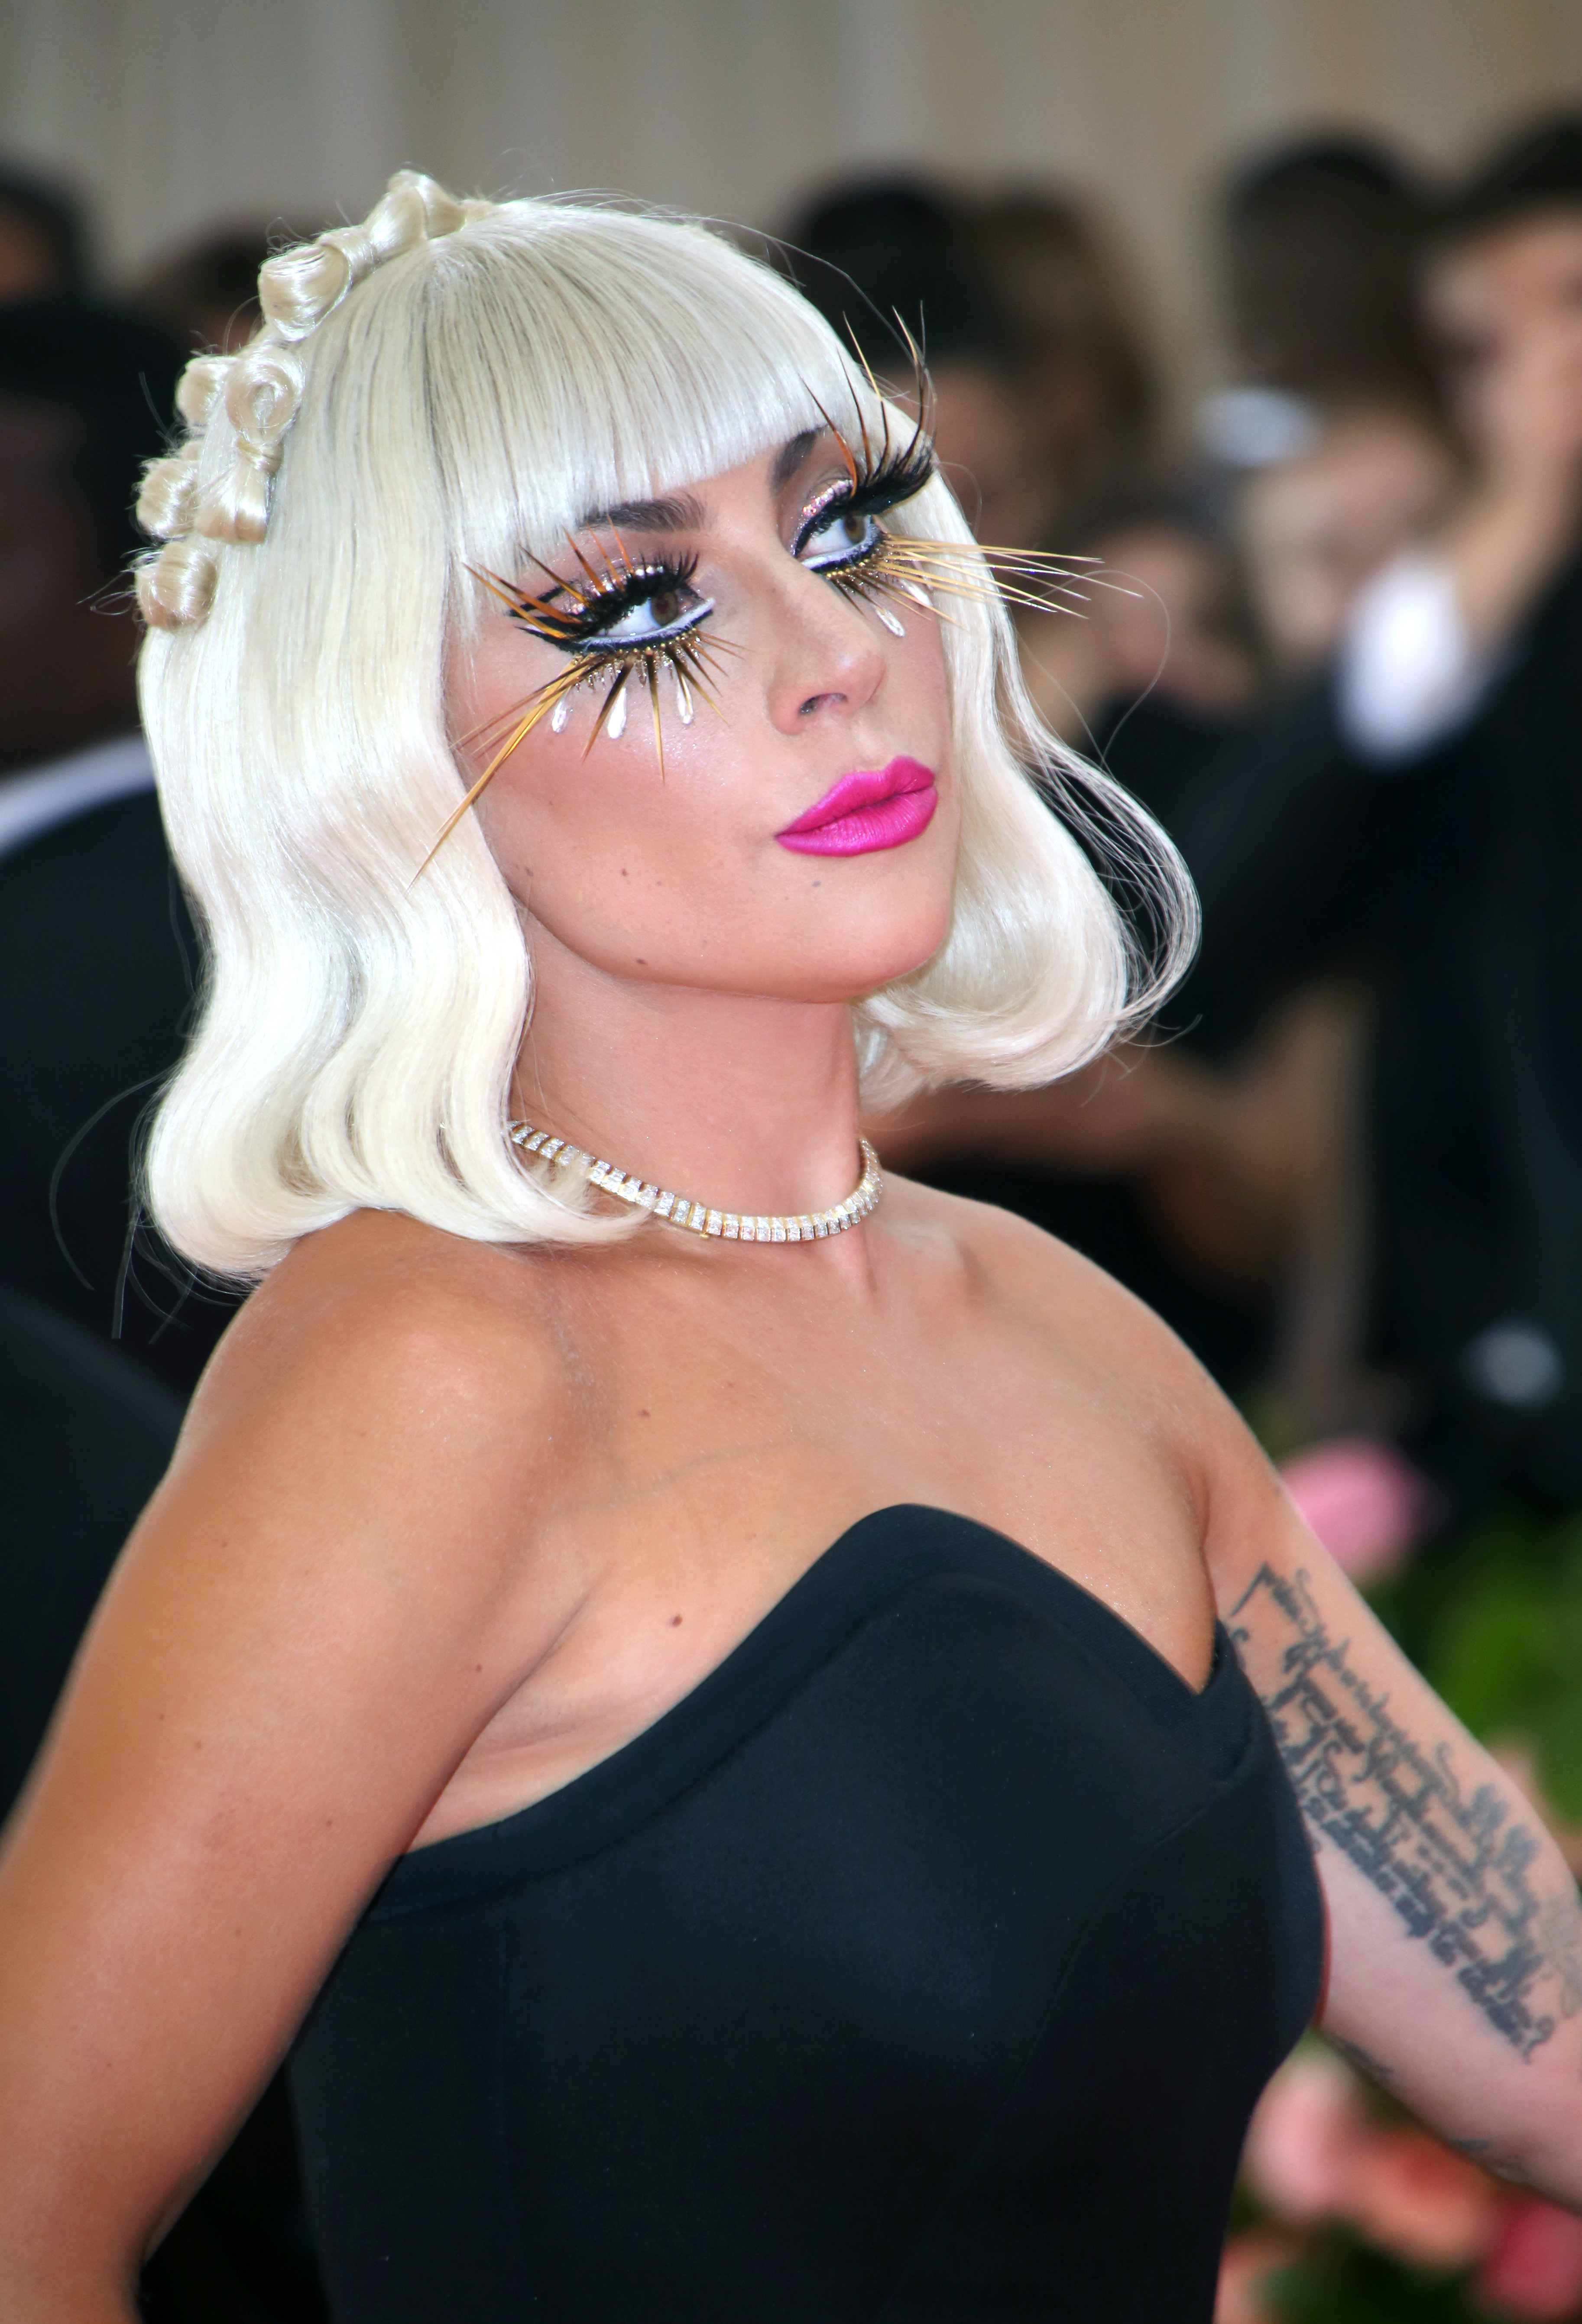 Σε αυτή τη φωτογραφία χωρίς ίχνος μακιγιάζ η Lady Gaga είναι αγνώριστη!